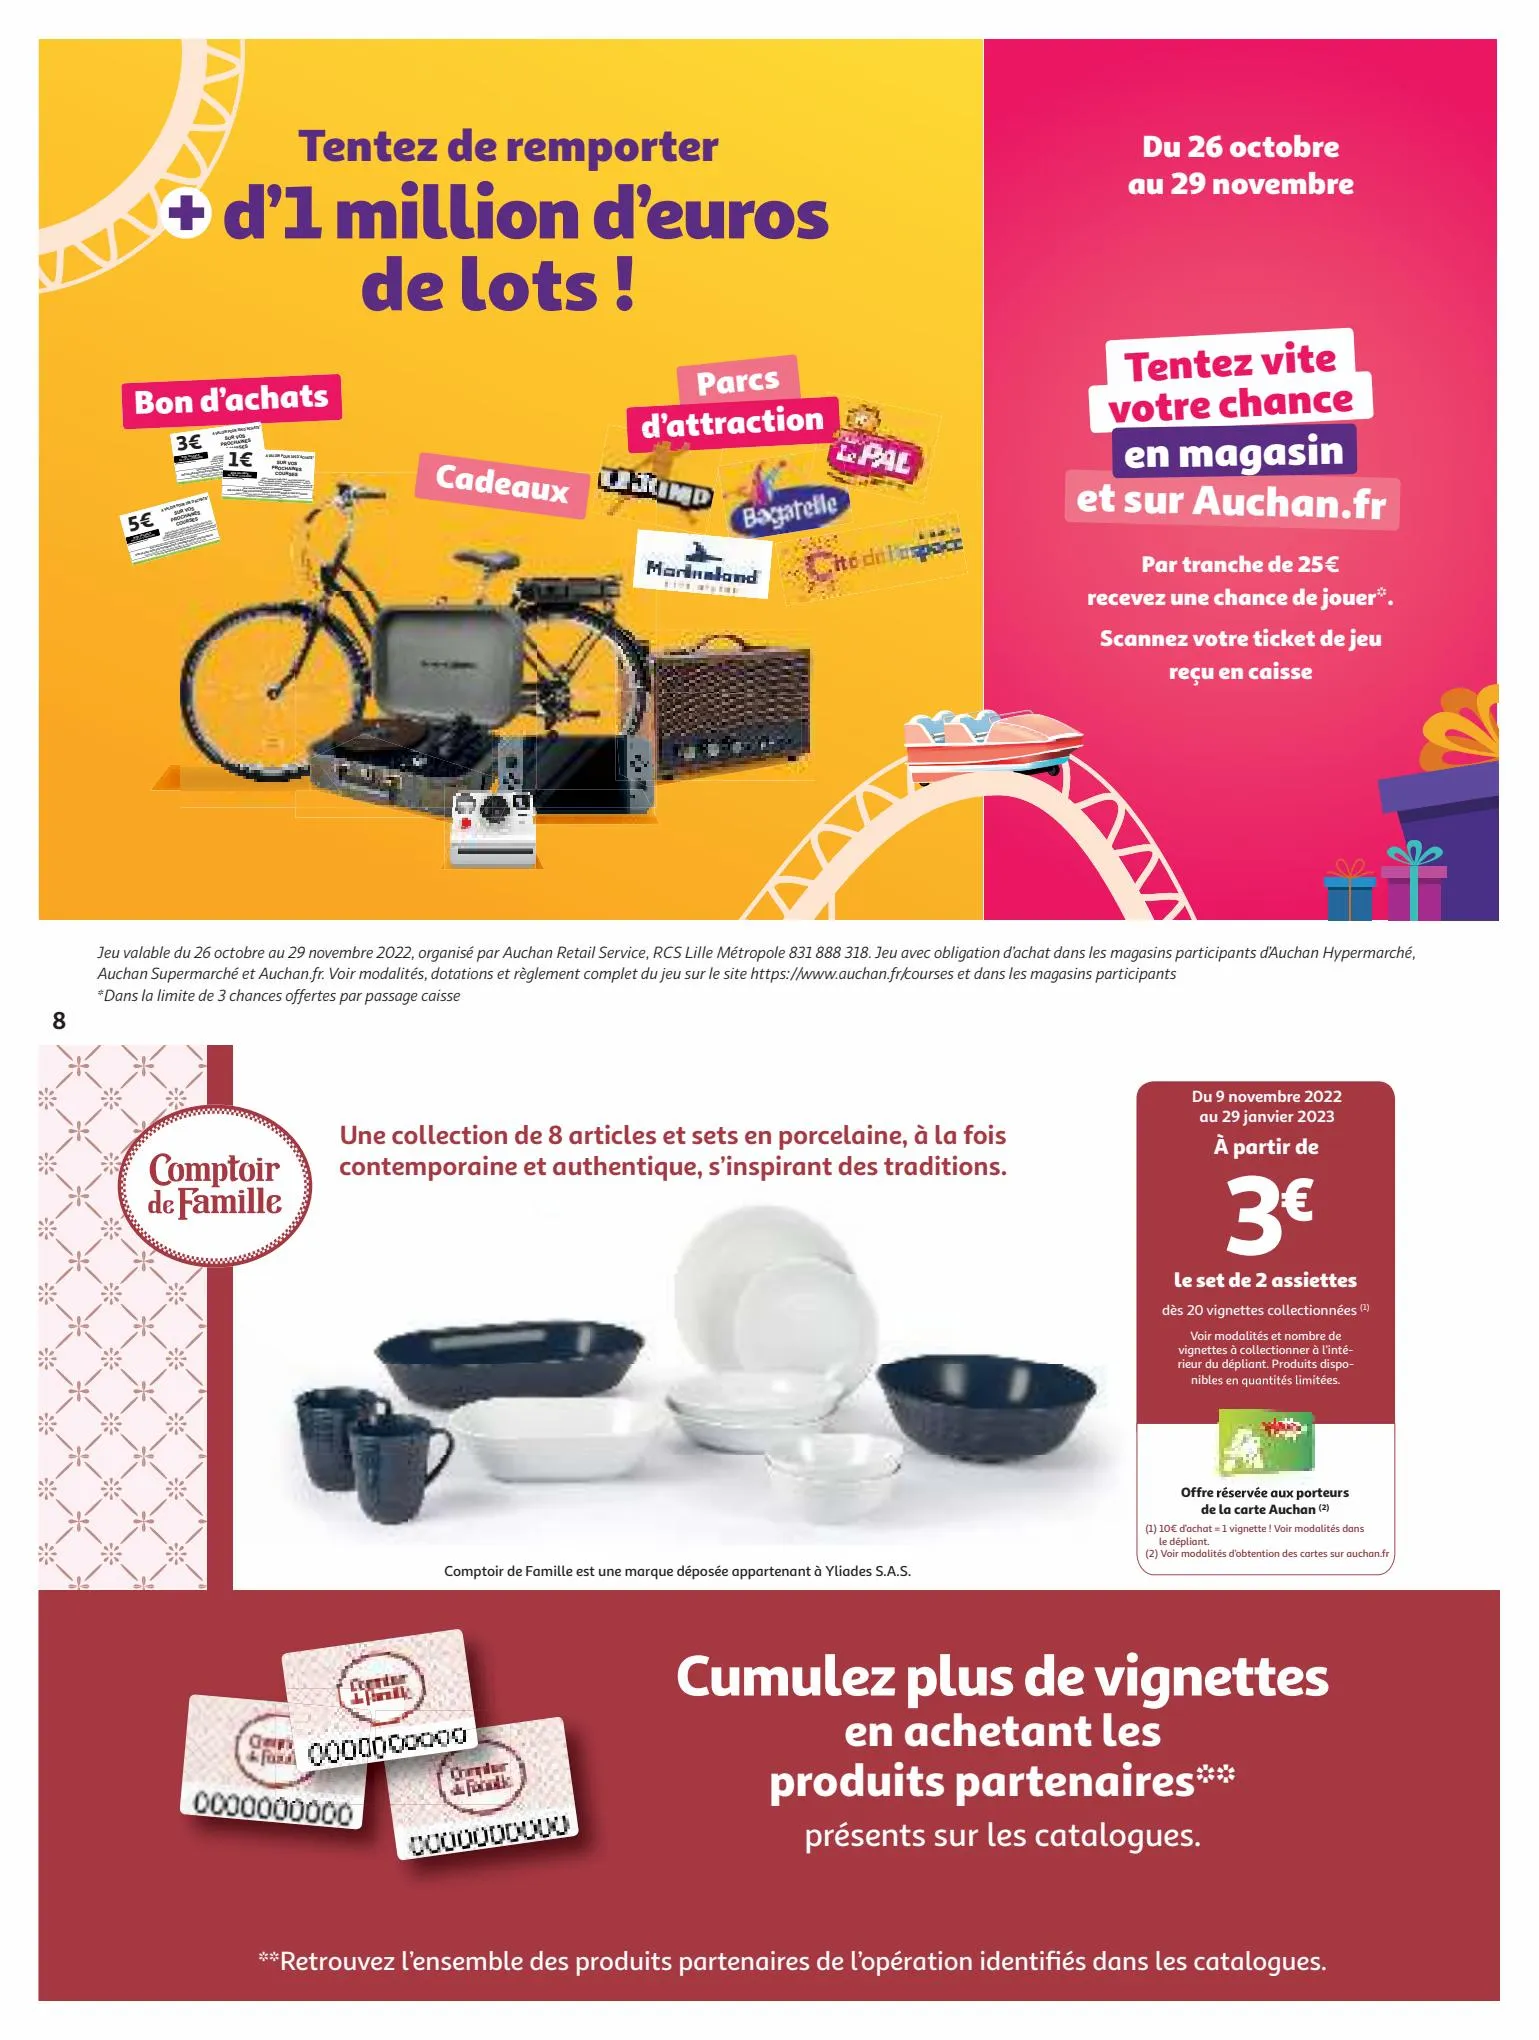 Catalogue 25 jours Auchan, page 00008